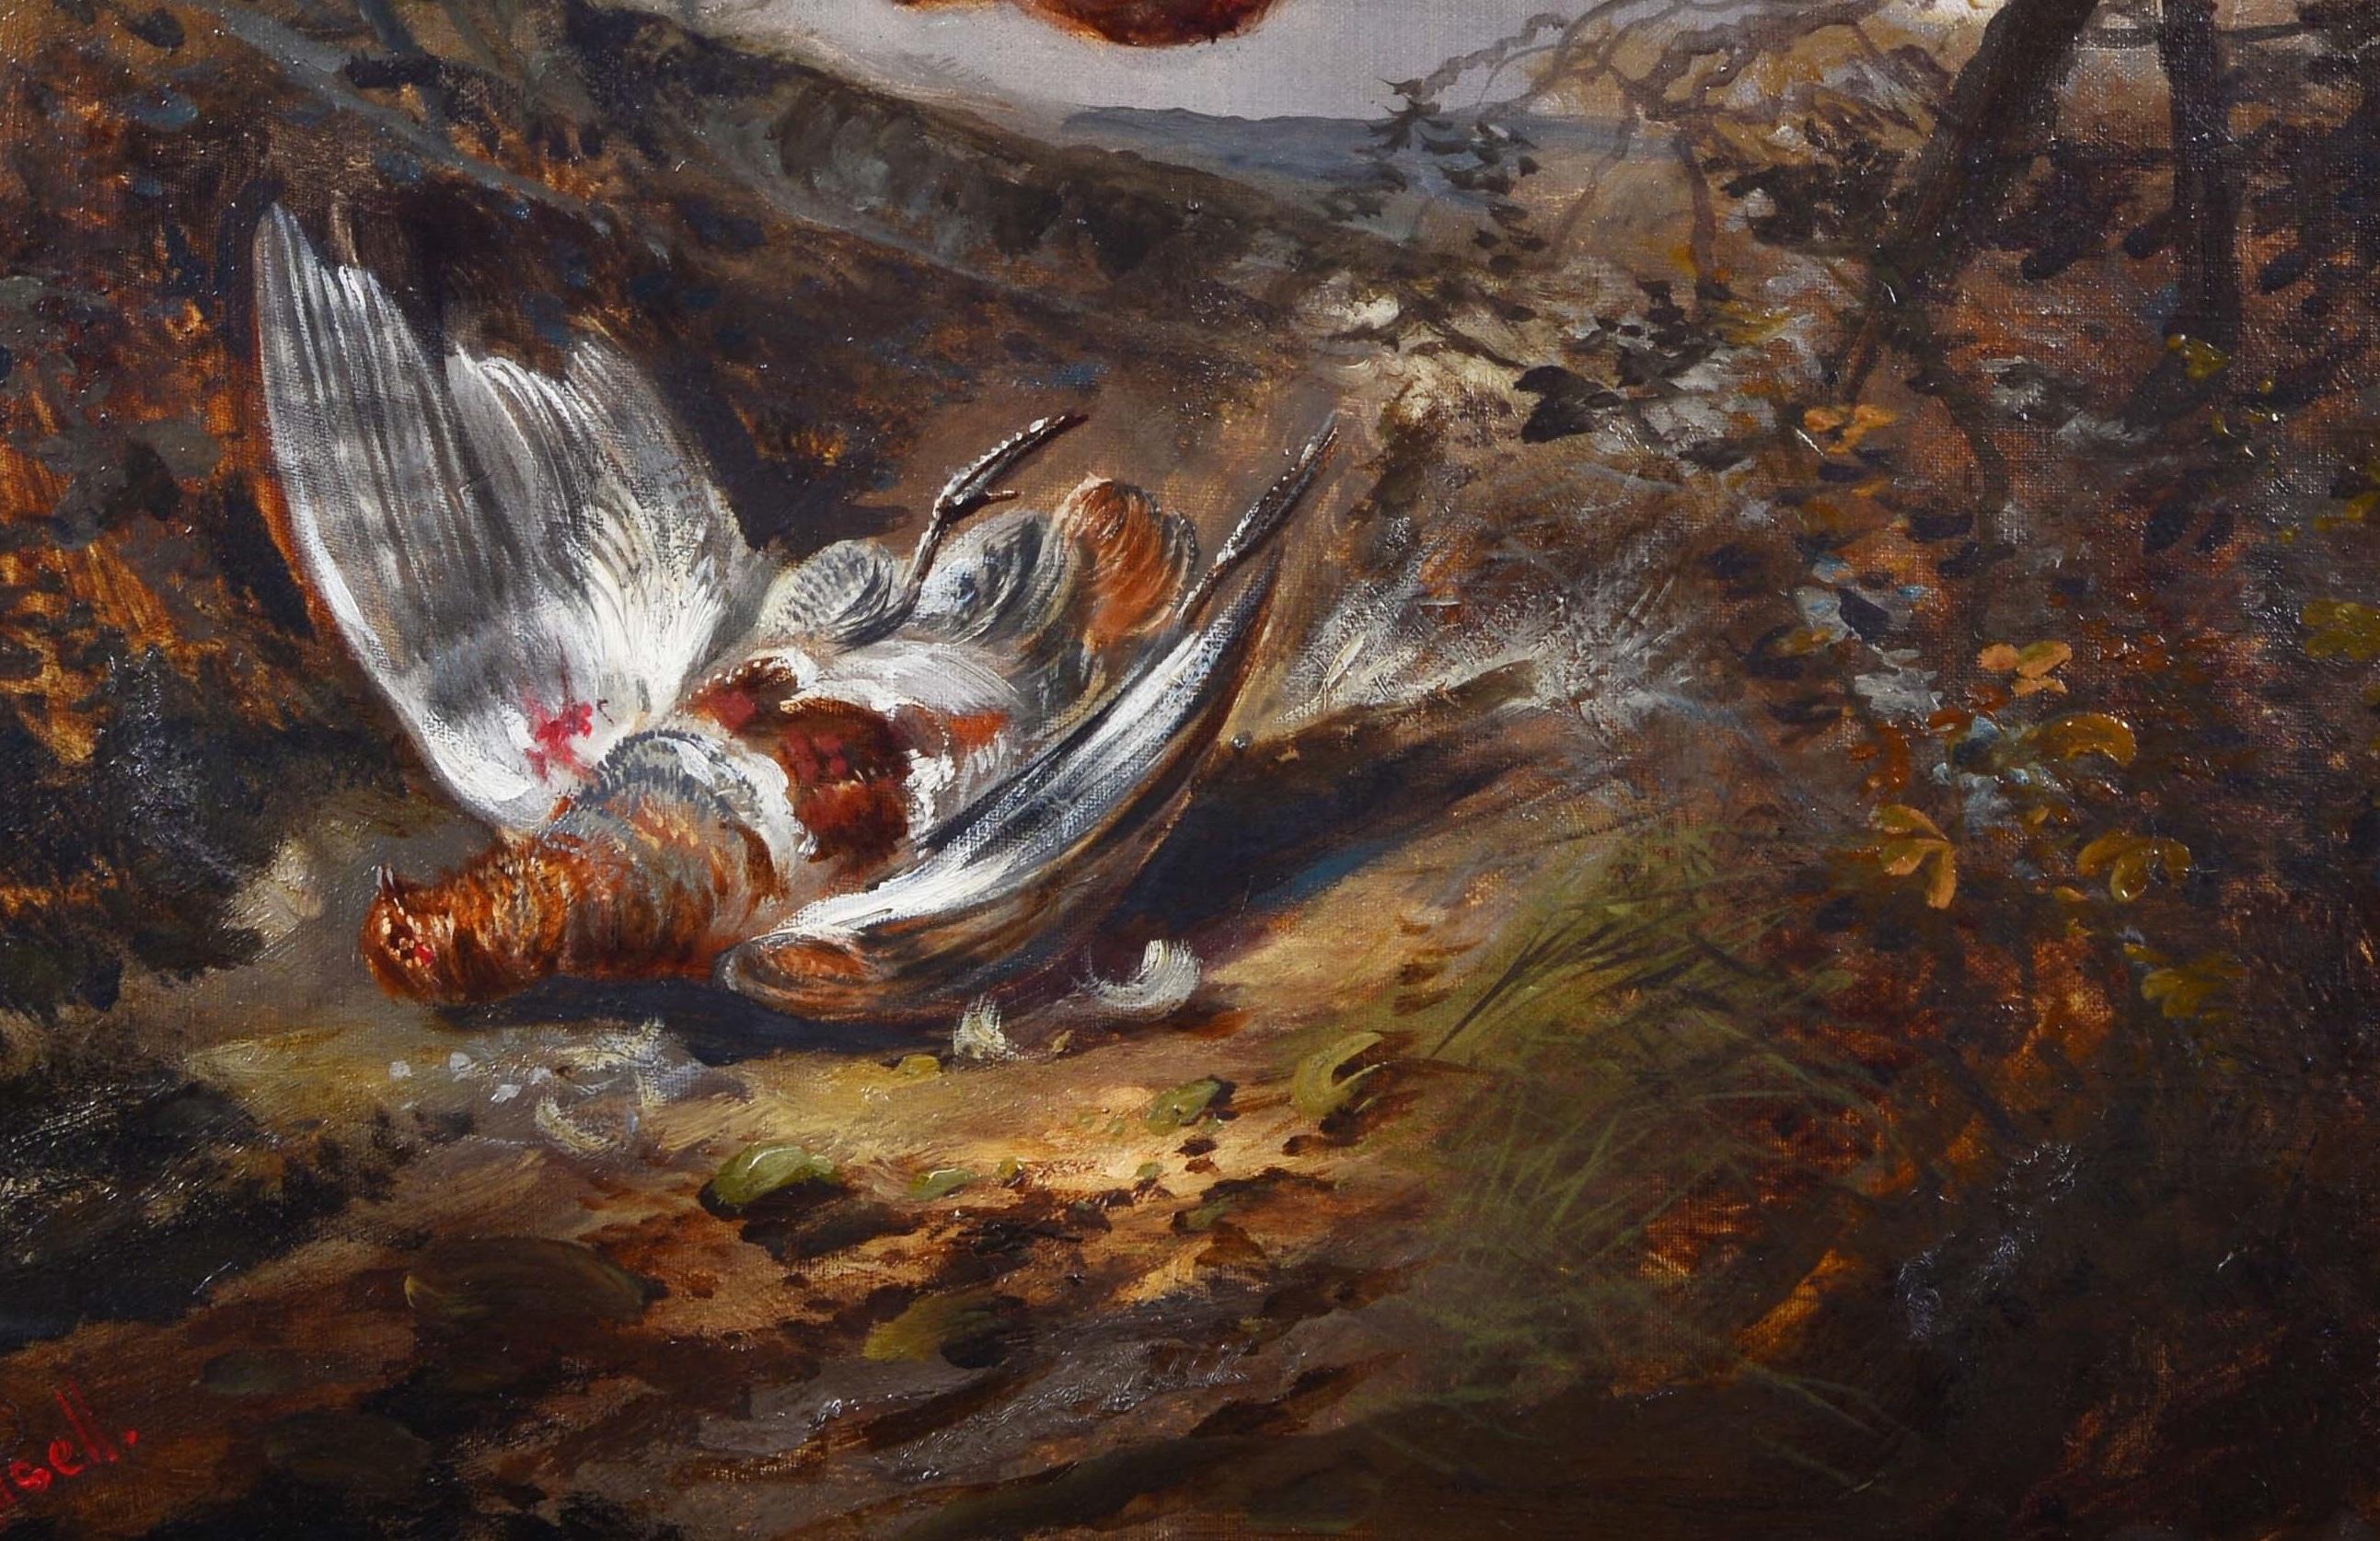 Huile sur toile par un peintre allemand dont la signature sur la toile par n'est pas lisible.
Bel exemple de scène de chasse.
Mesures avec cadre : CM 67.5 x 3.5 x 58
Signé par l'artiste en bas à gauche 